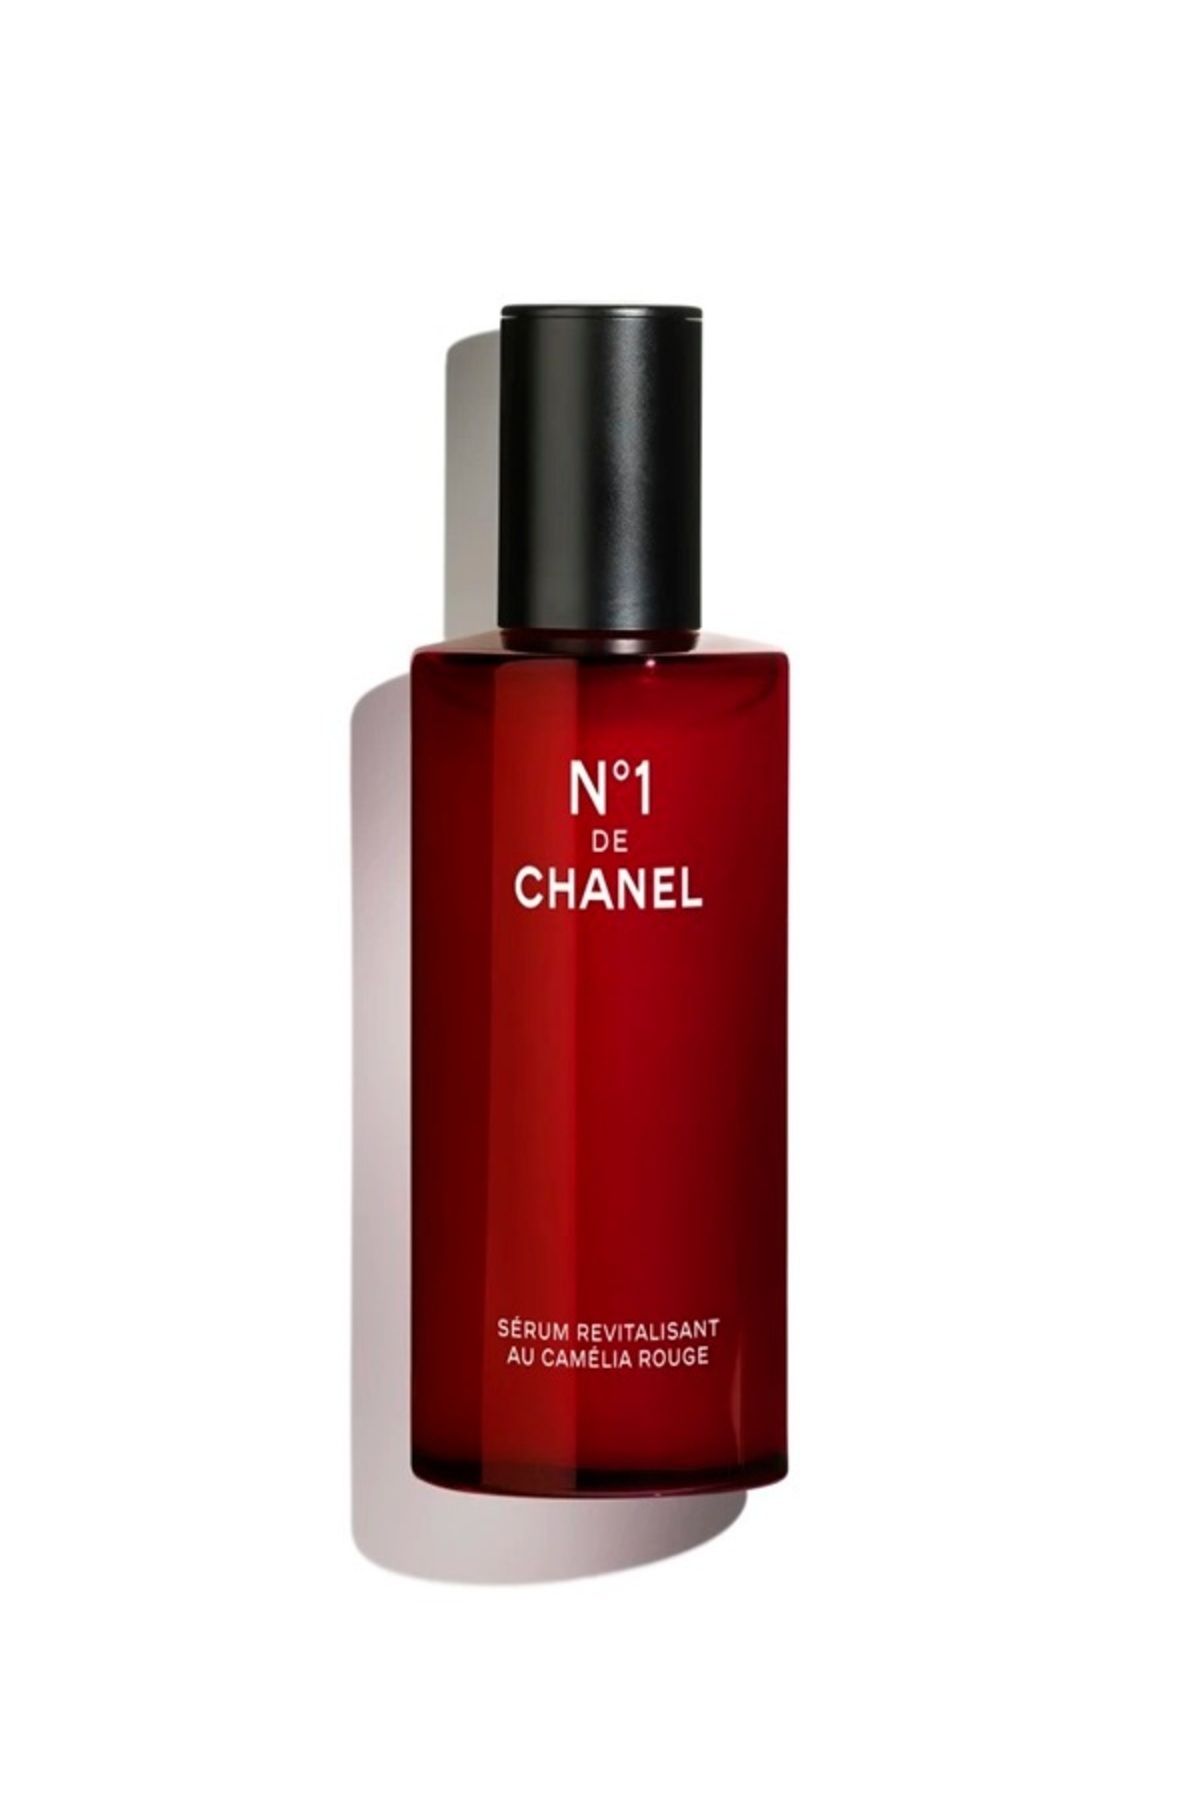 Chanel N°1 DE CHANEL REVITALIZING SERUM-GENÇ GÖRÜNEN CİLT-PÜRÜZSÜZLEŞTİRİR-AYDINLIK GÖRÜNÜM SAĞLAR 30ml